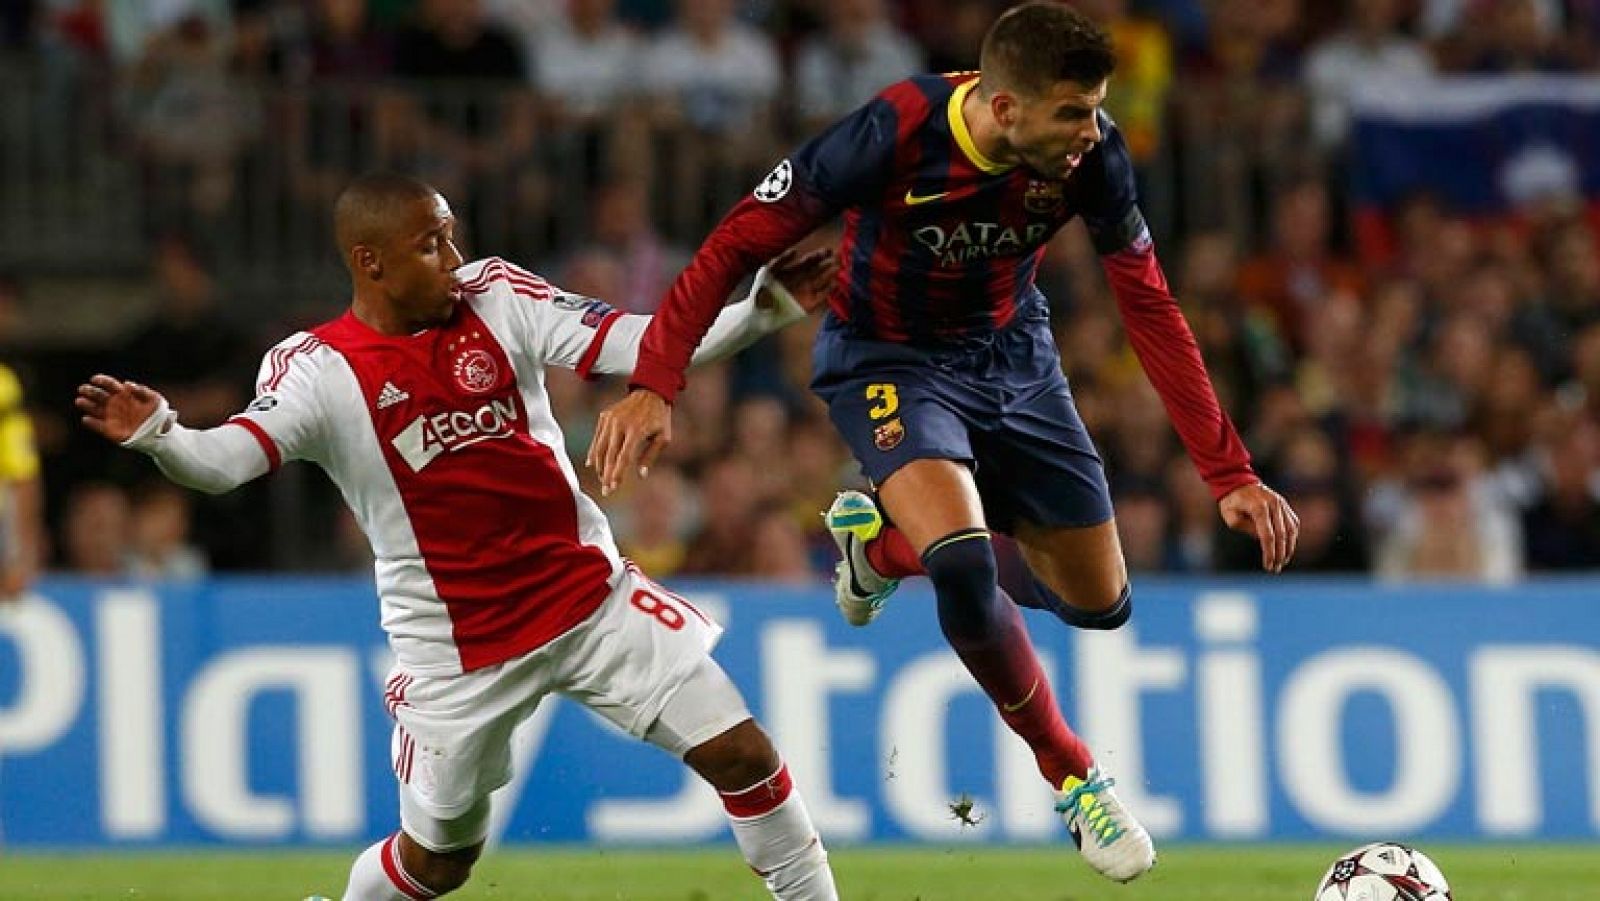 El central del Barcelona se ha estrenado en la Champions con un buen gol de cabeza a pase de Neymar, tras adelantarse a la defensa.